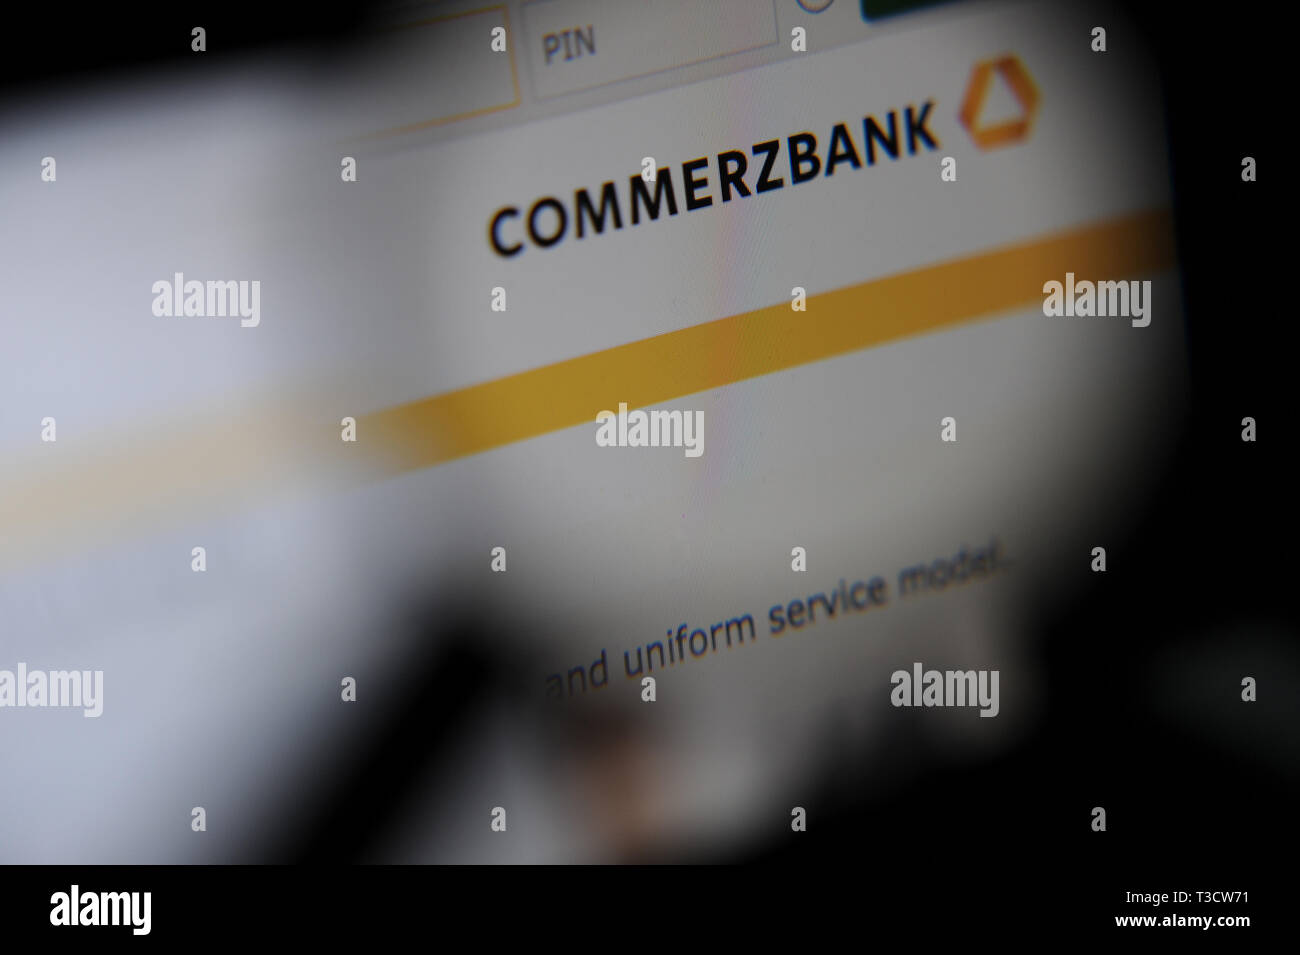 Sitio web de Commerzbank vistos a través de una lupa Foto de stock